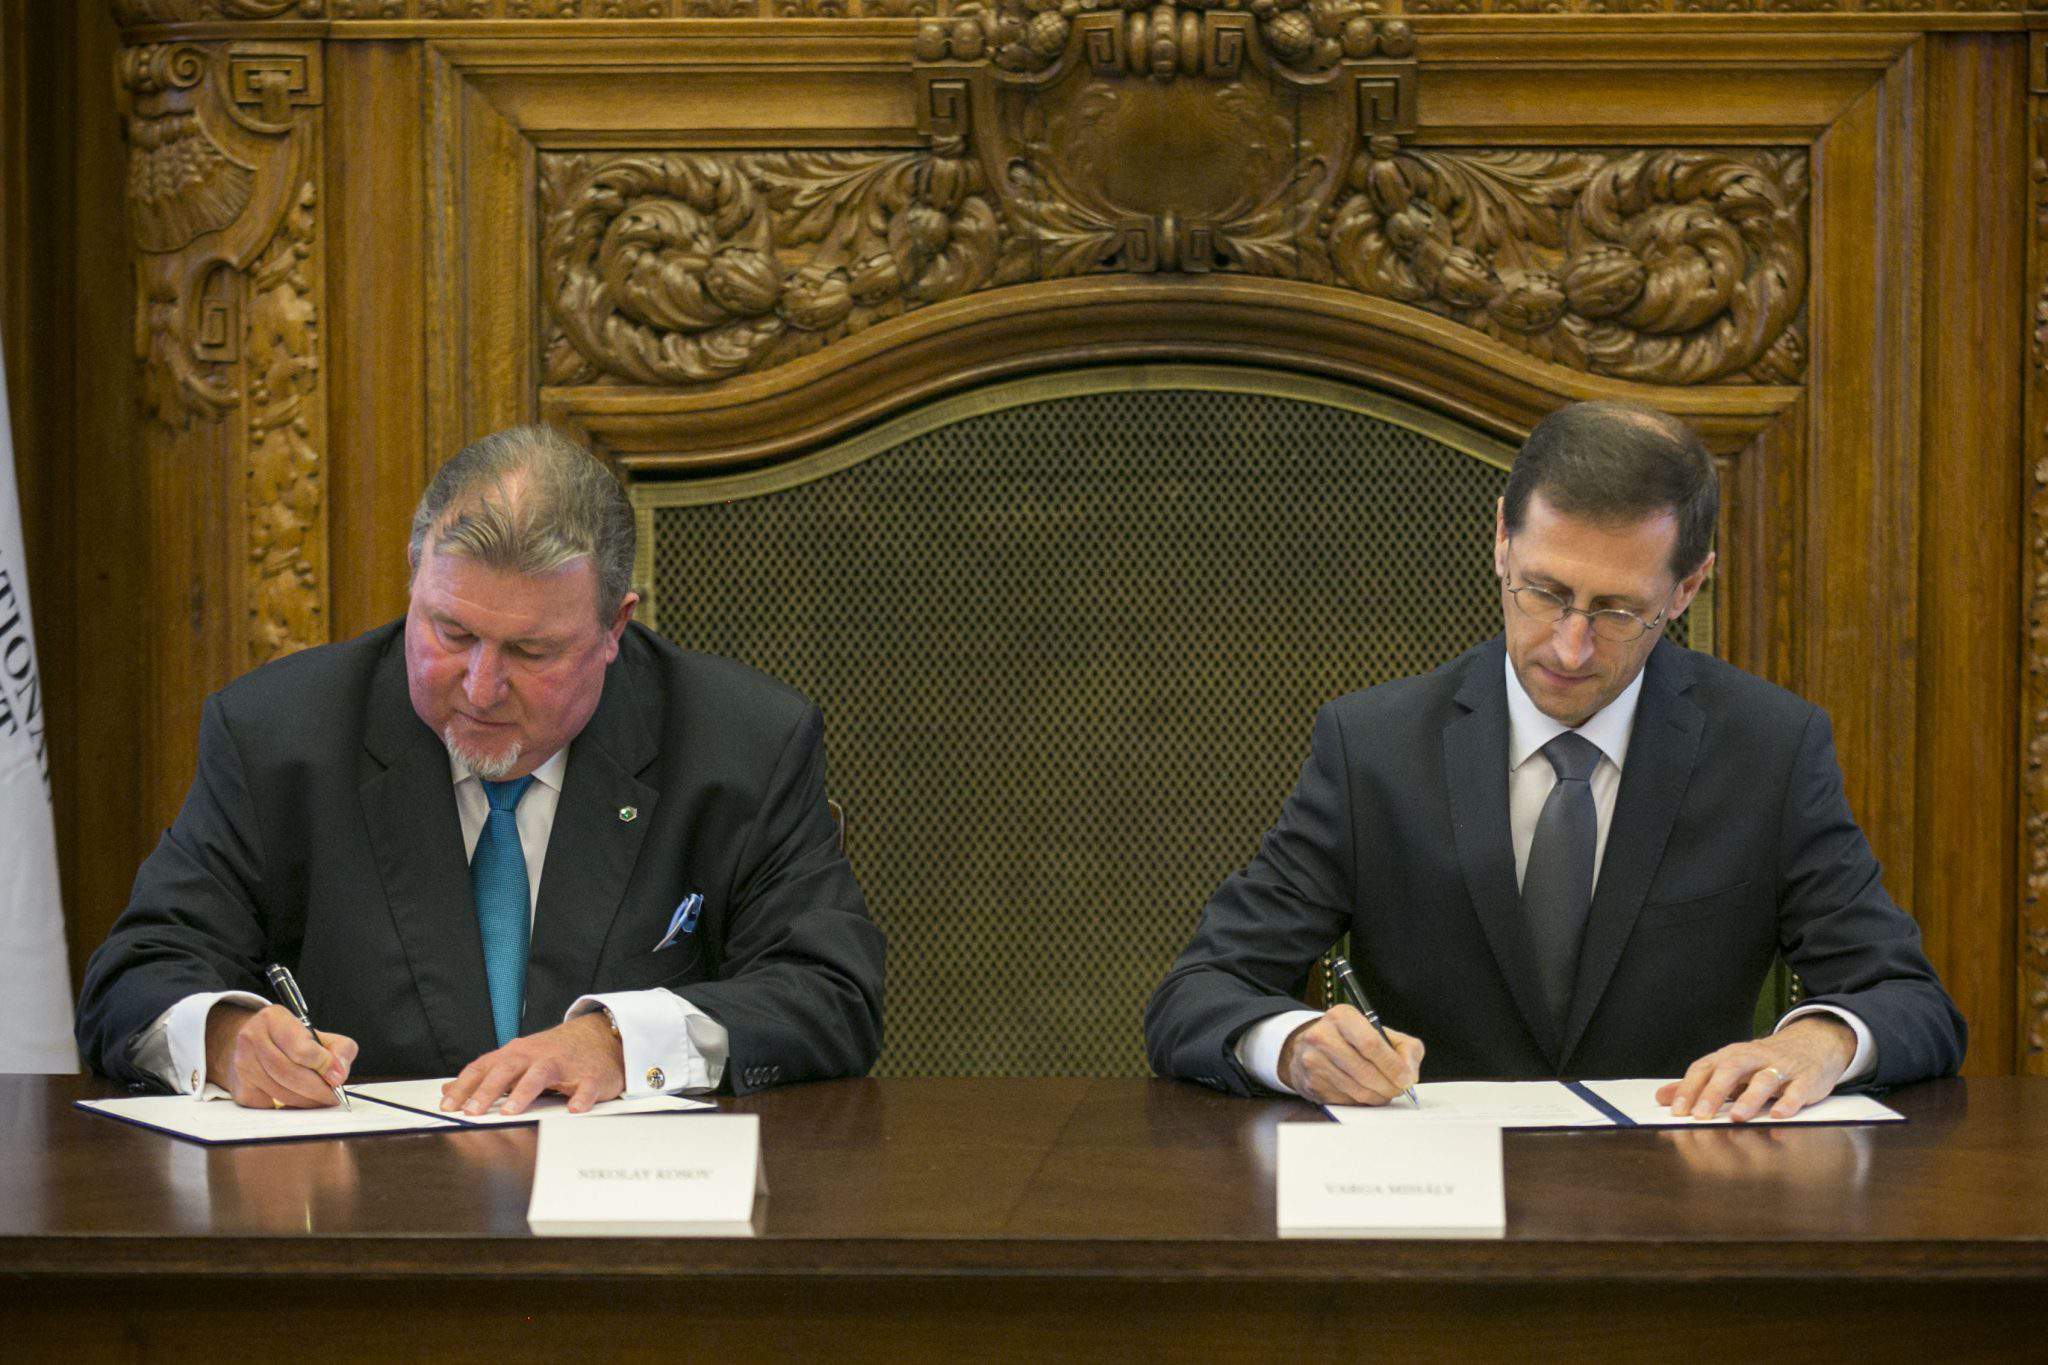 Banca de investiții IIB, acordul inițial Varga pentru aducerea biroului regional în Ungaria